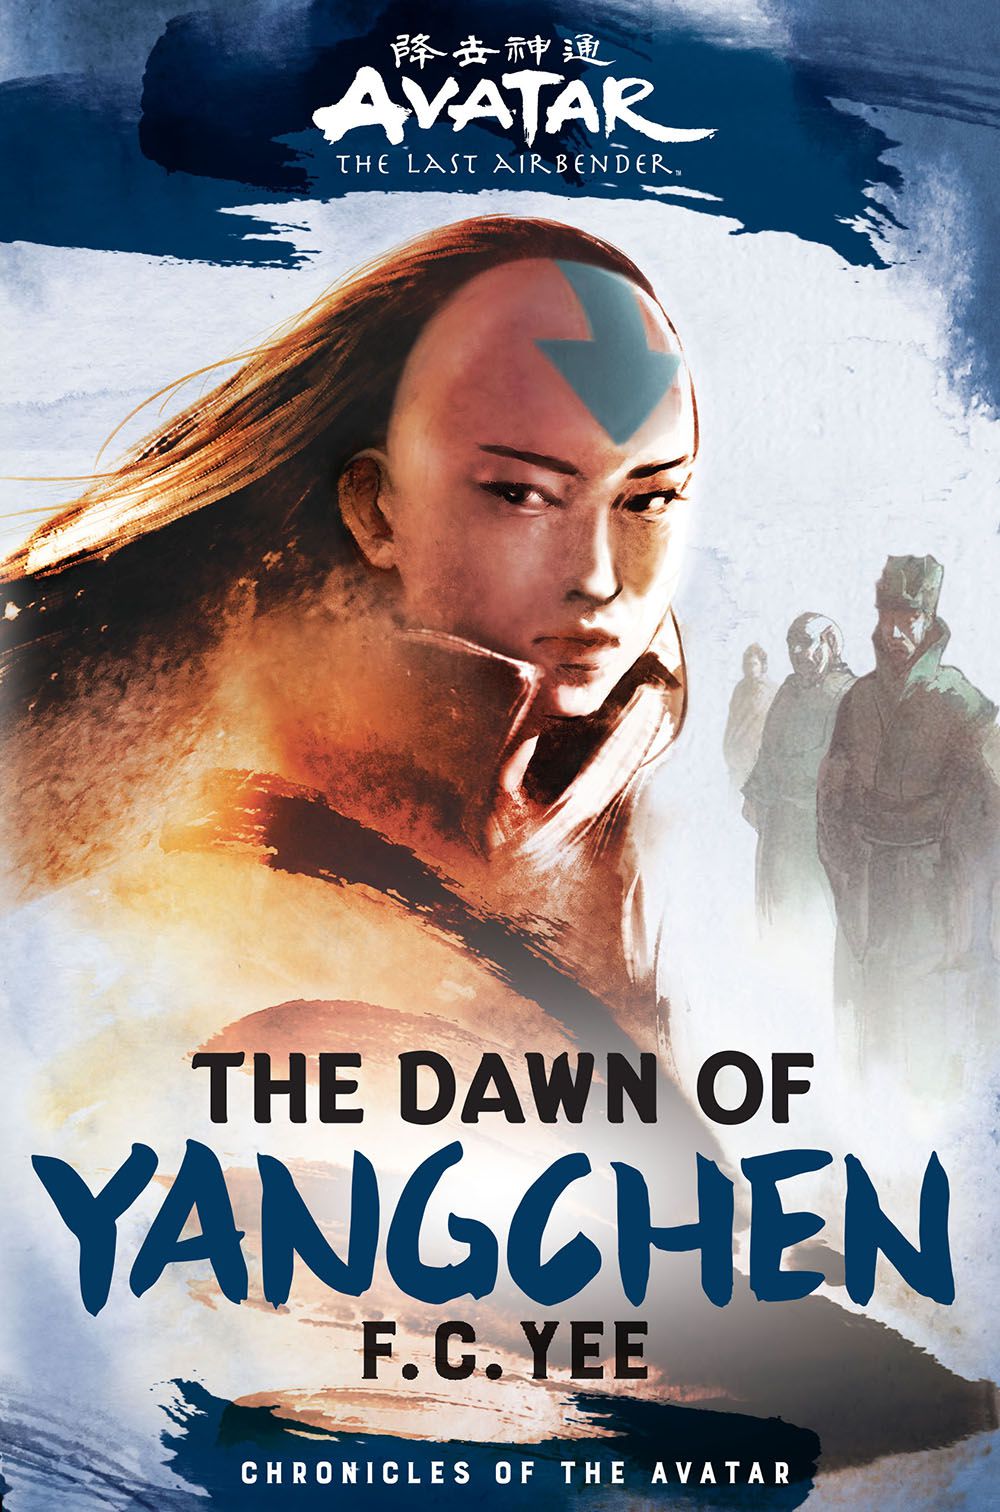 La couverture du livre Avatar, The Last Airbender: The Dawn of Yangchen, mettant en vedette une femme Avatar dans une robe abstraite, avec une rangée d'anciens Avatars derrière elle, s'étendant au loin